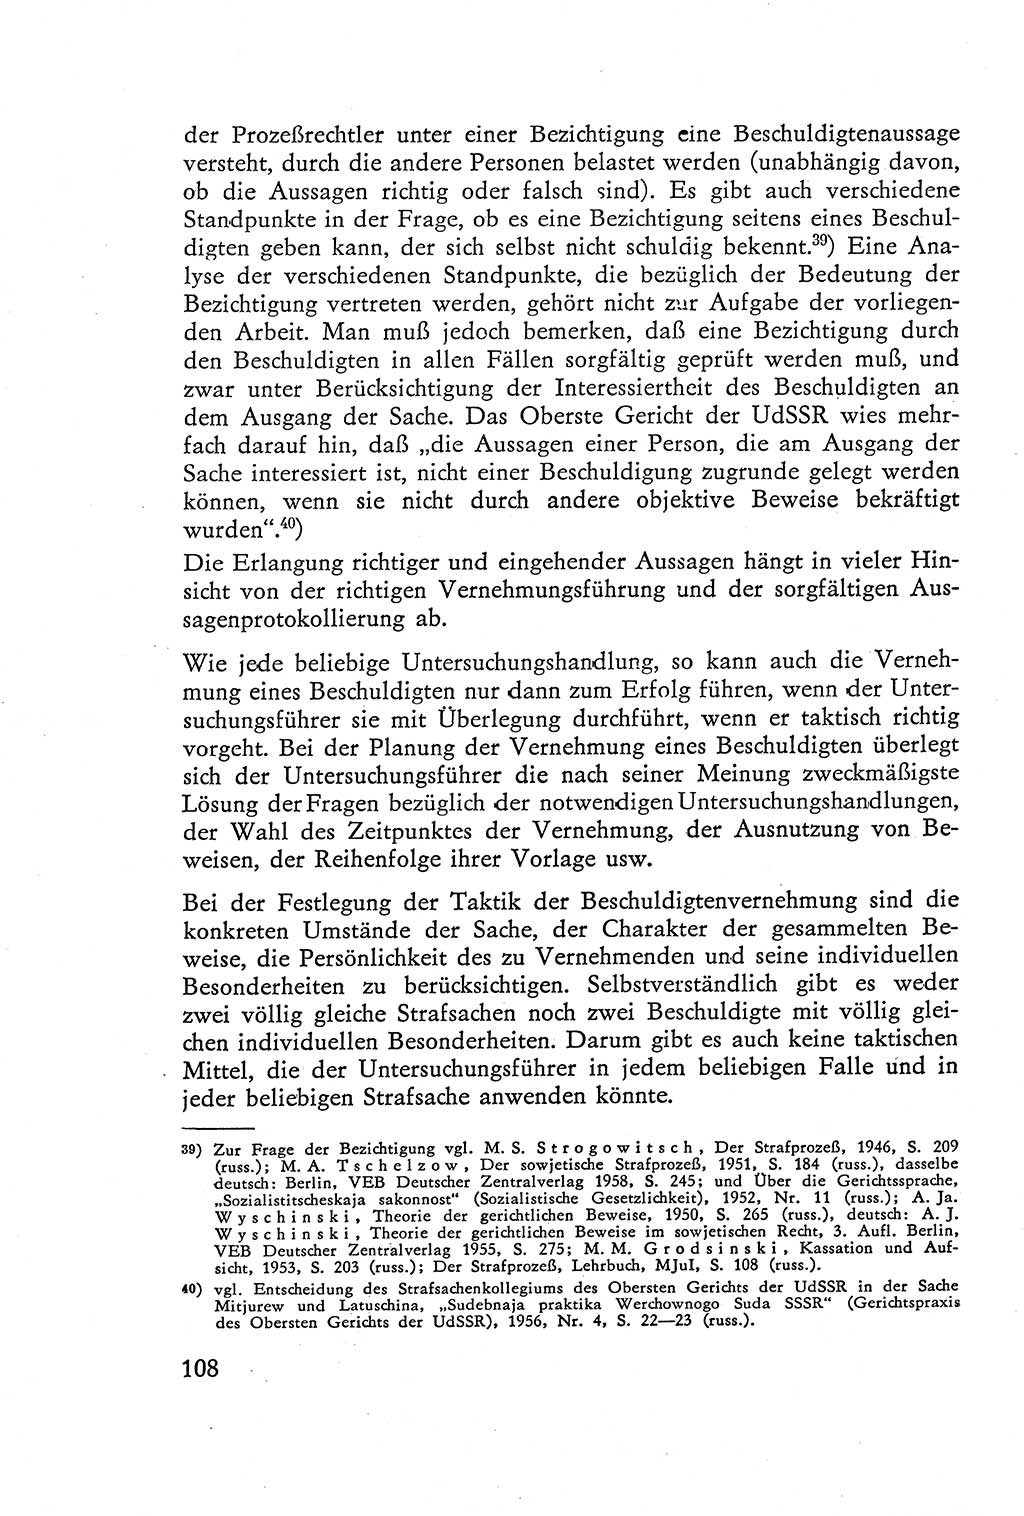 Die Vernehmung [Deutsche Demokratische Republik (DDR)] 1960, Seite 108 (Vern. DDR 1960, S. 108)